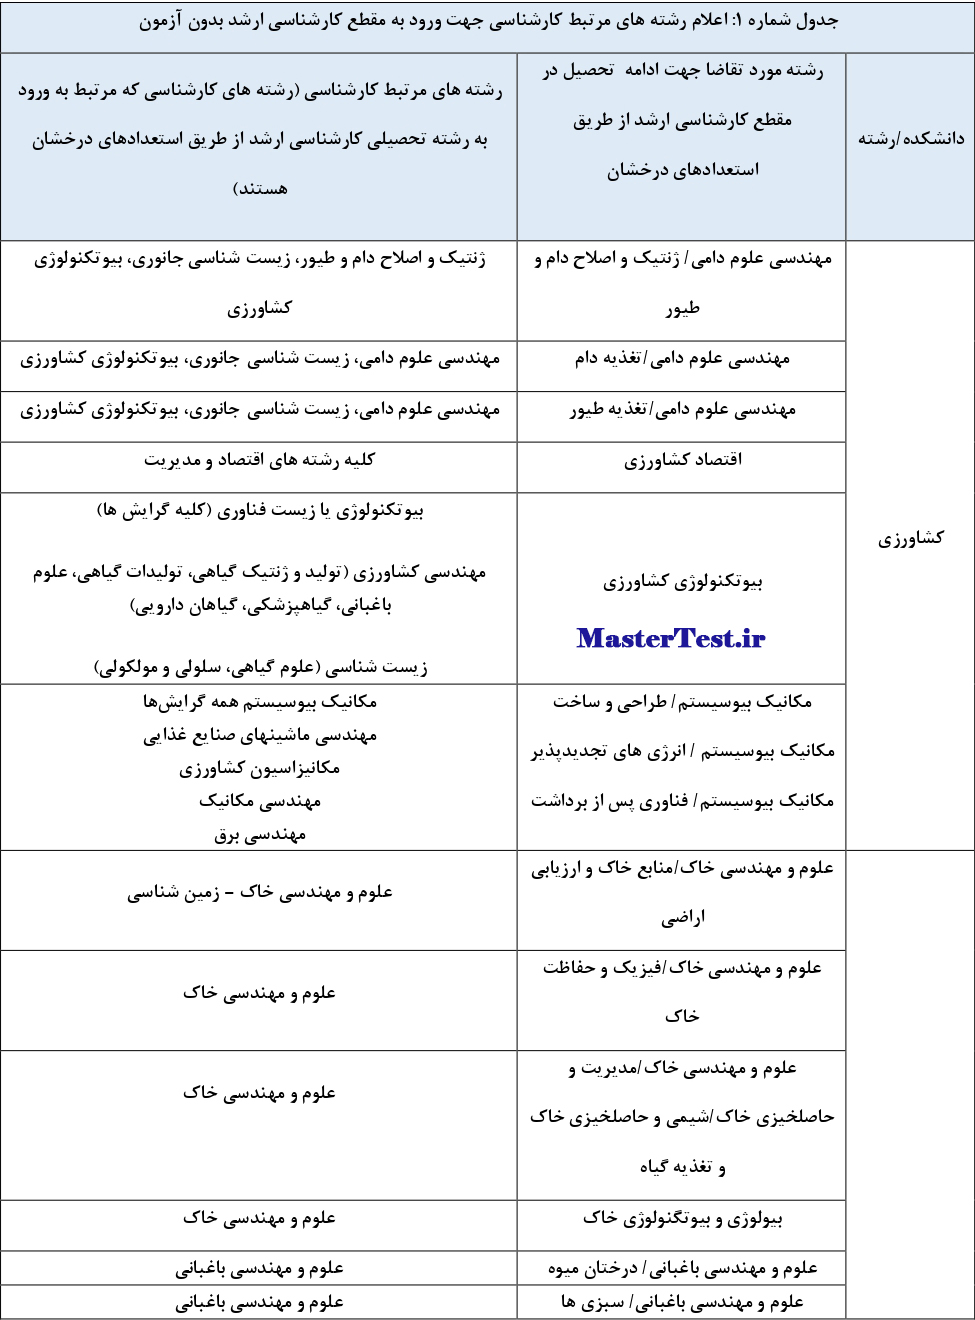 جدول رشته های کارشناسی ارشد بدون کنکور دانشگاه شهید باهنر کرمان ۱۴۰۳